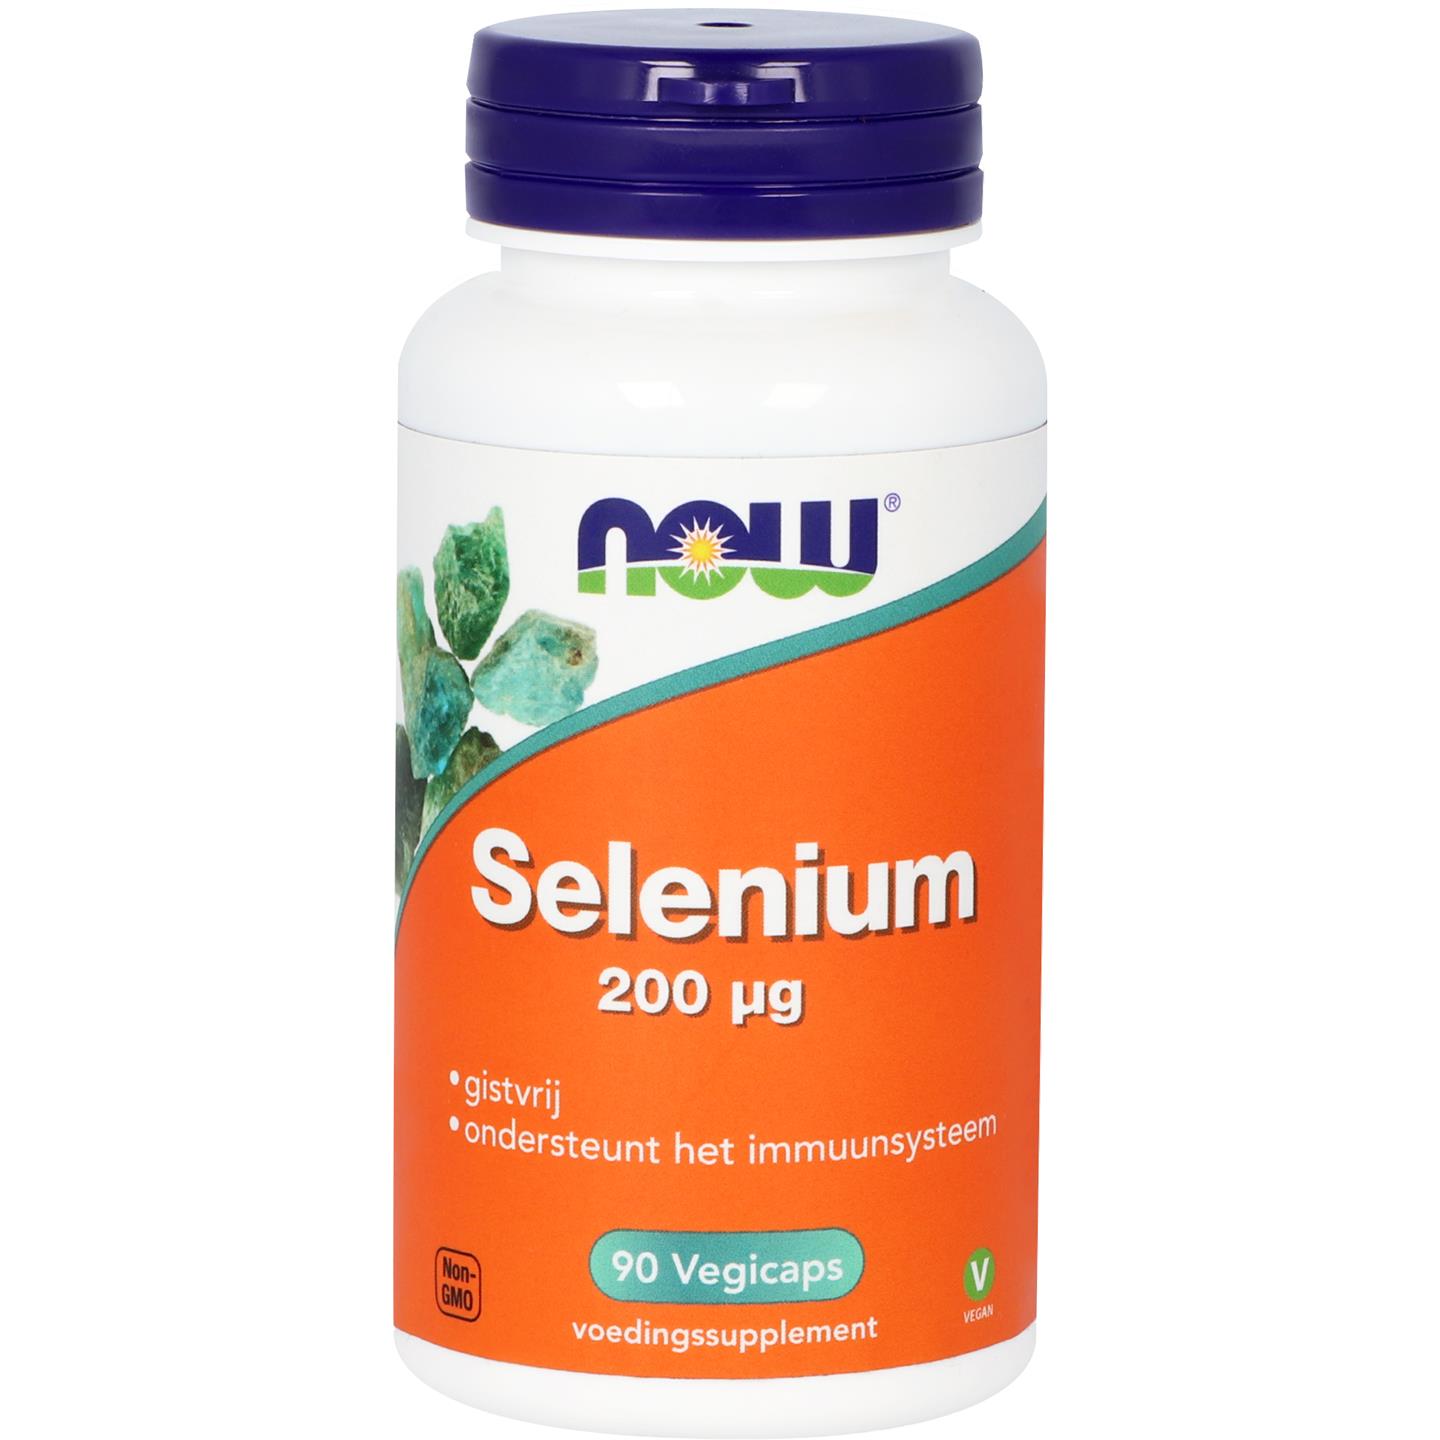 Selenium селен. Selenium. Selenium германский. Русский Selenium. Selenium производитель Канада.